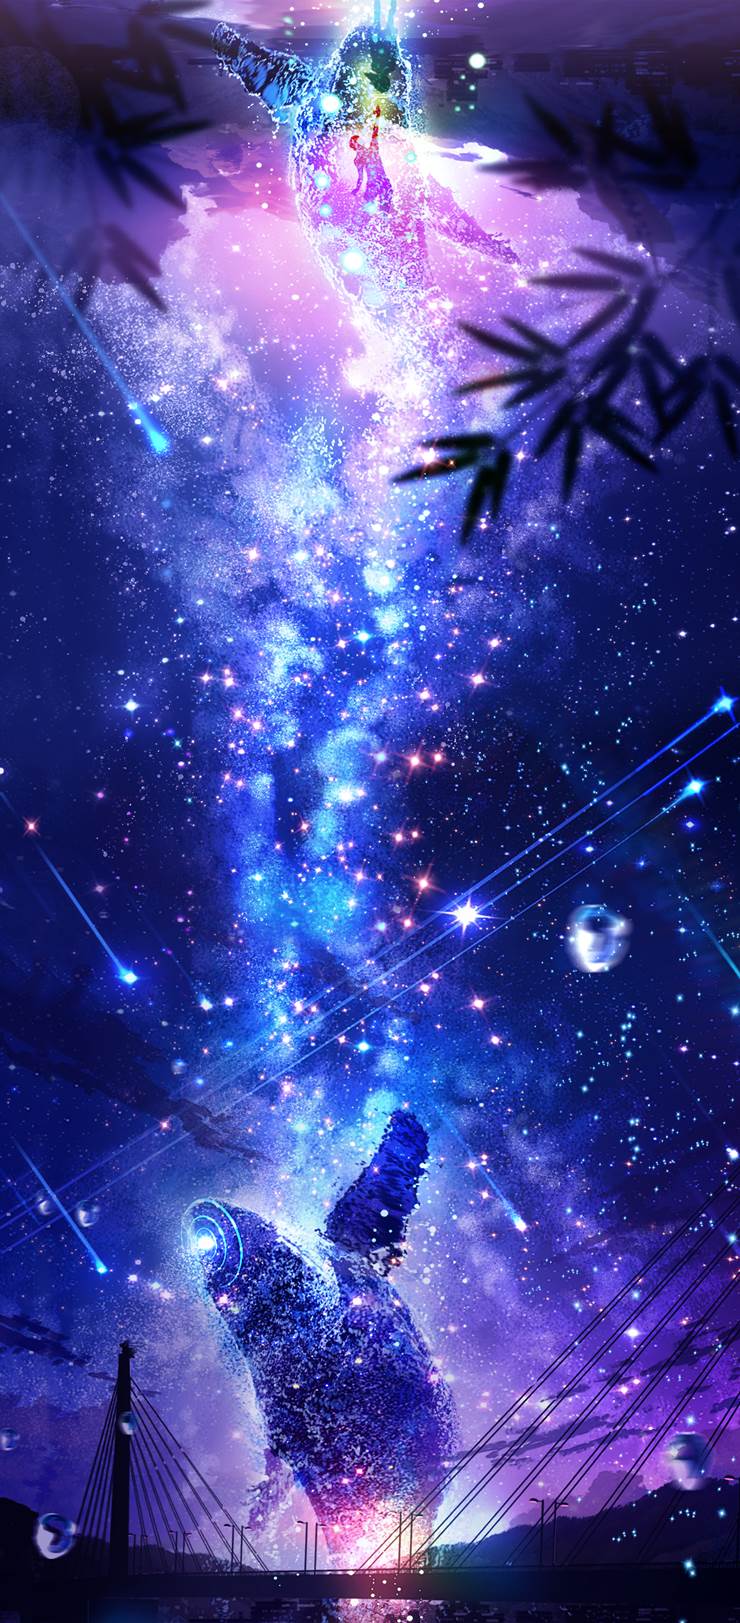 穿越时空的鲸鱼“向银河祈祷”点击推荐|插画师makoron117的风景插画图片